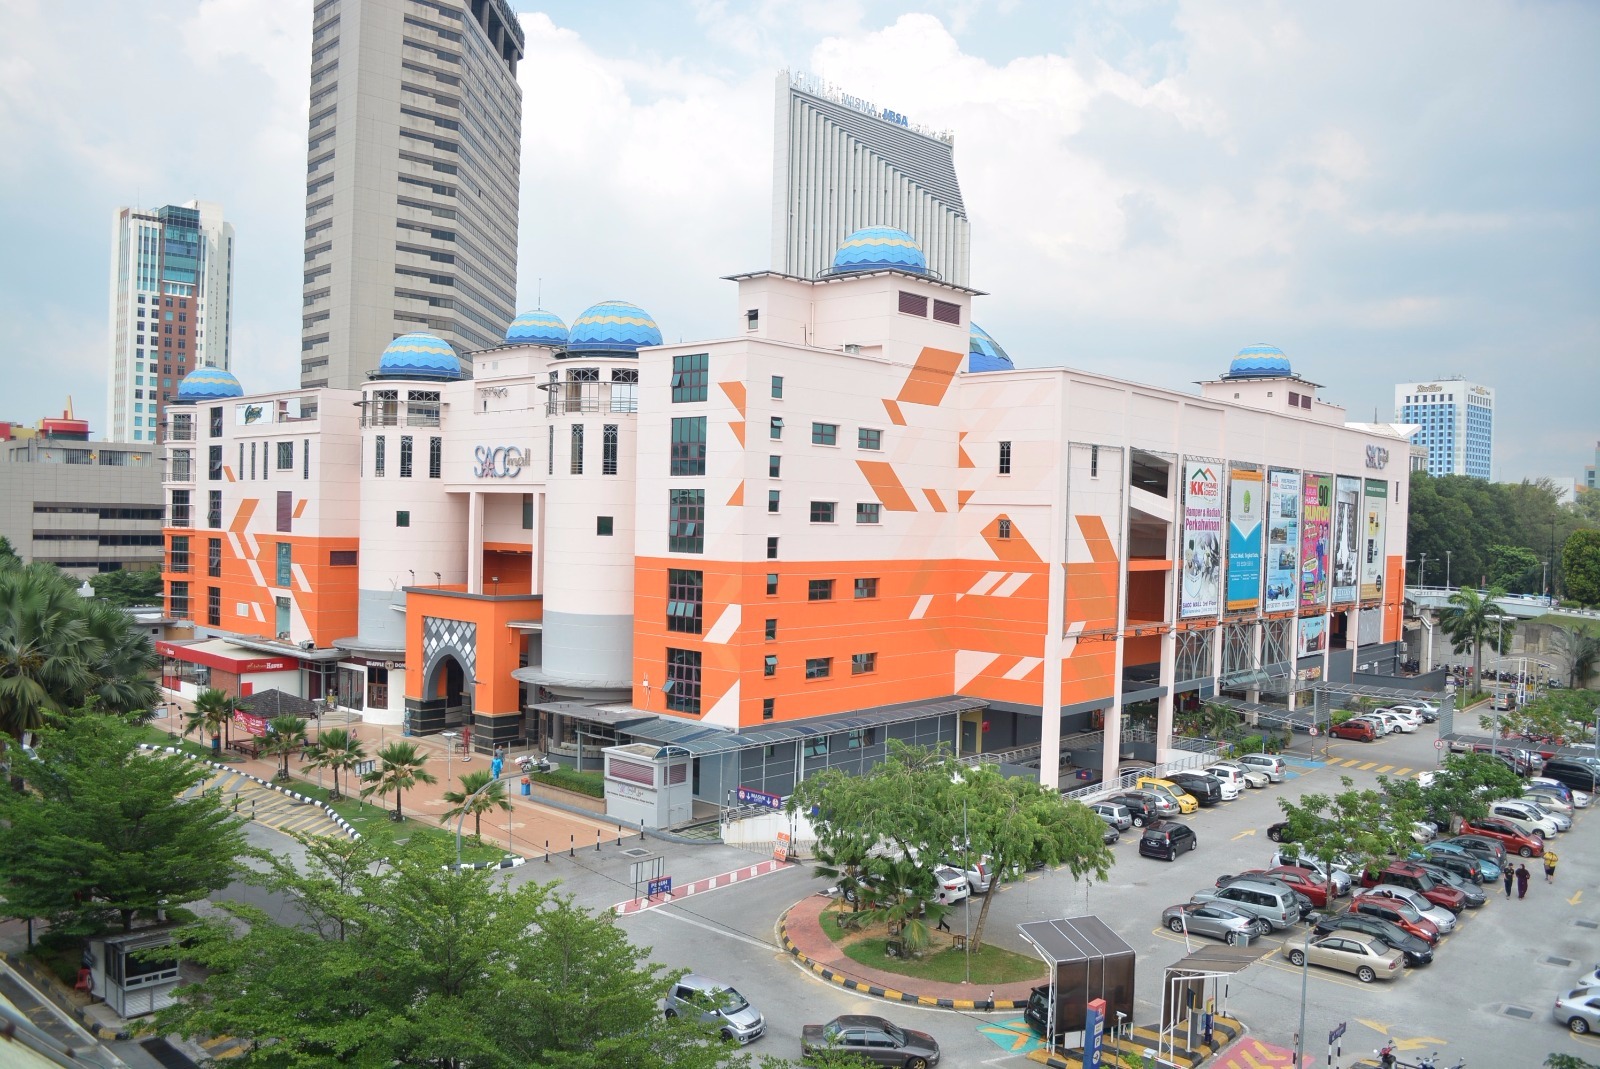 SACC Mall – PKNS Real Estate Sdn Bhd (PREC)